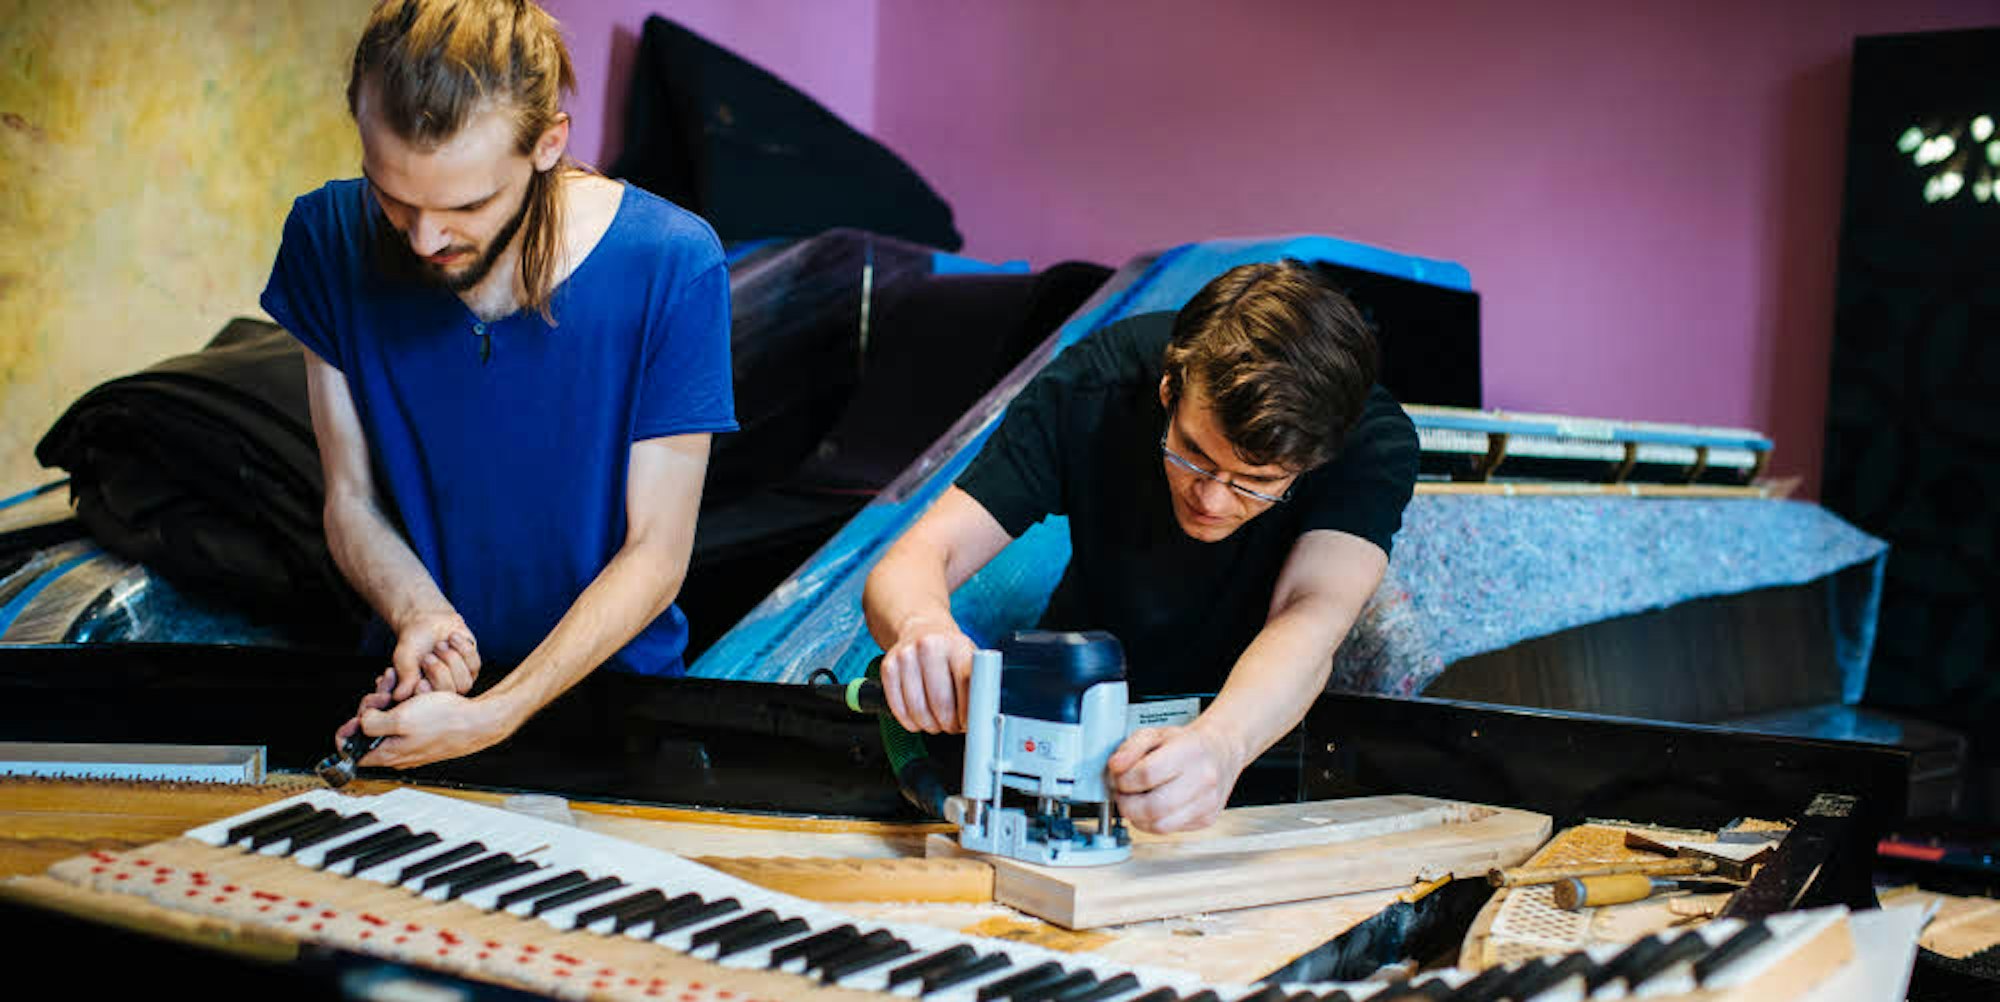 Instrumente reparieren, Klaviere stimmen gehört zur Arbeit von Felix Wollenweber (l.) und Paul Lachmann.